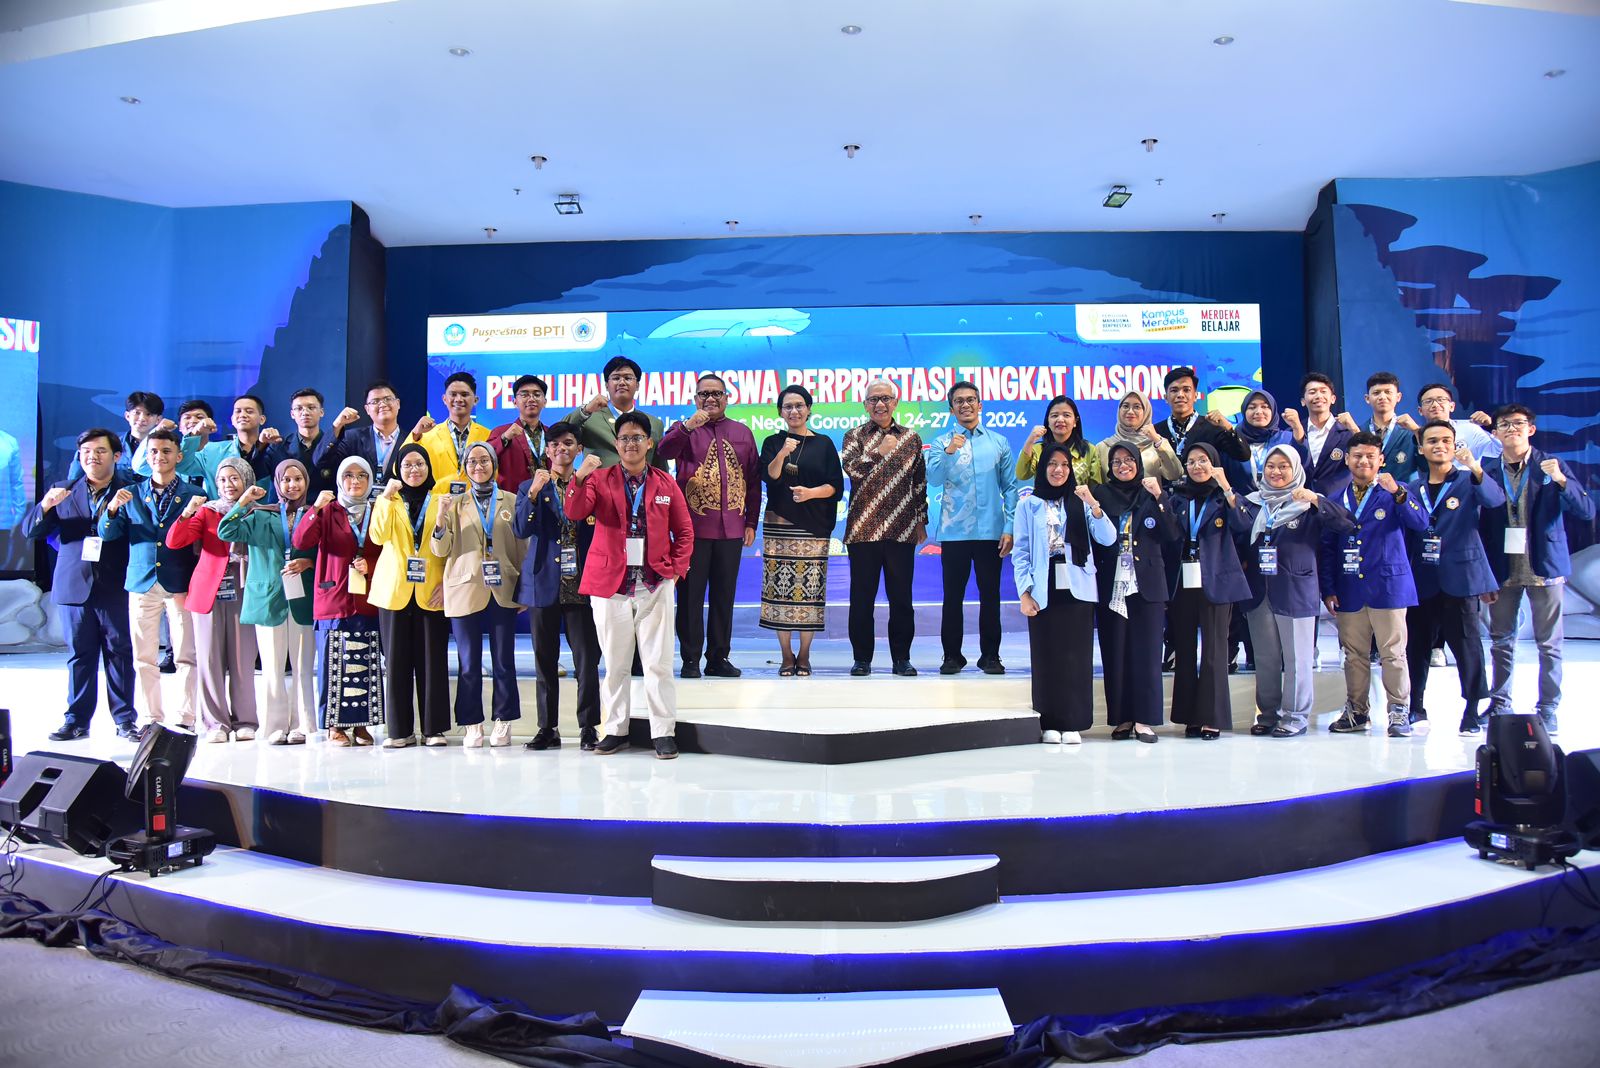  Pilmapres Nasional 2024 Dimulai, 31 Mahasiswa Se-Indonesia Siap Berkompetisi   